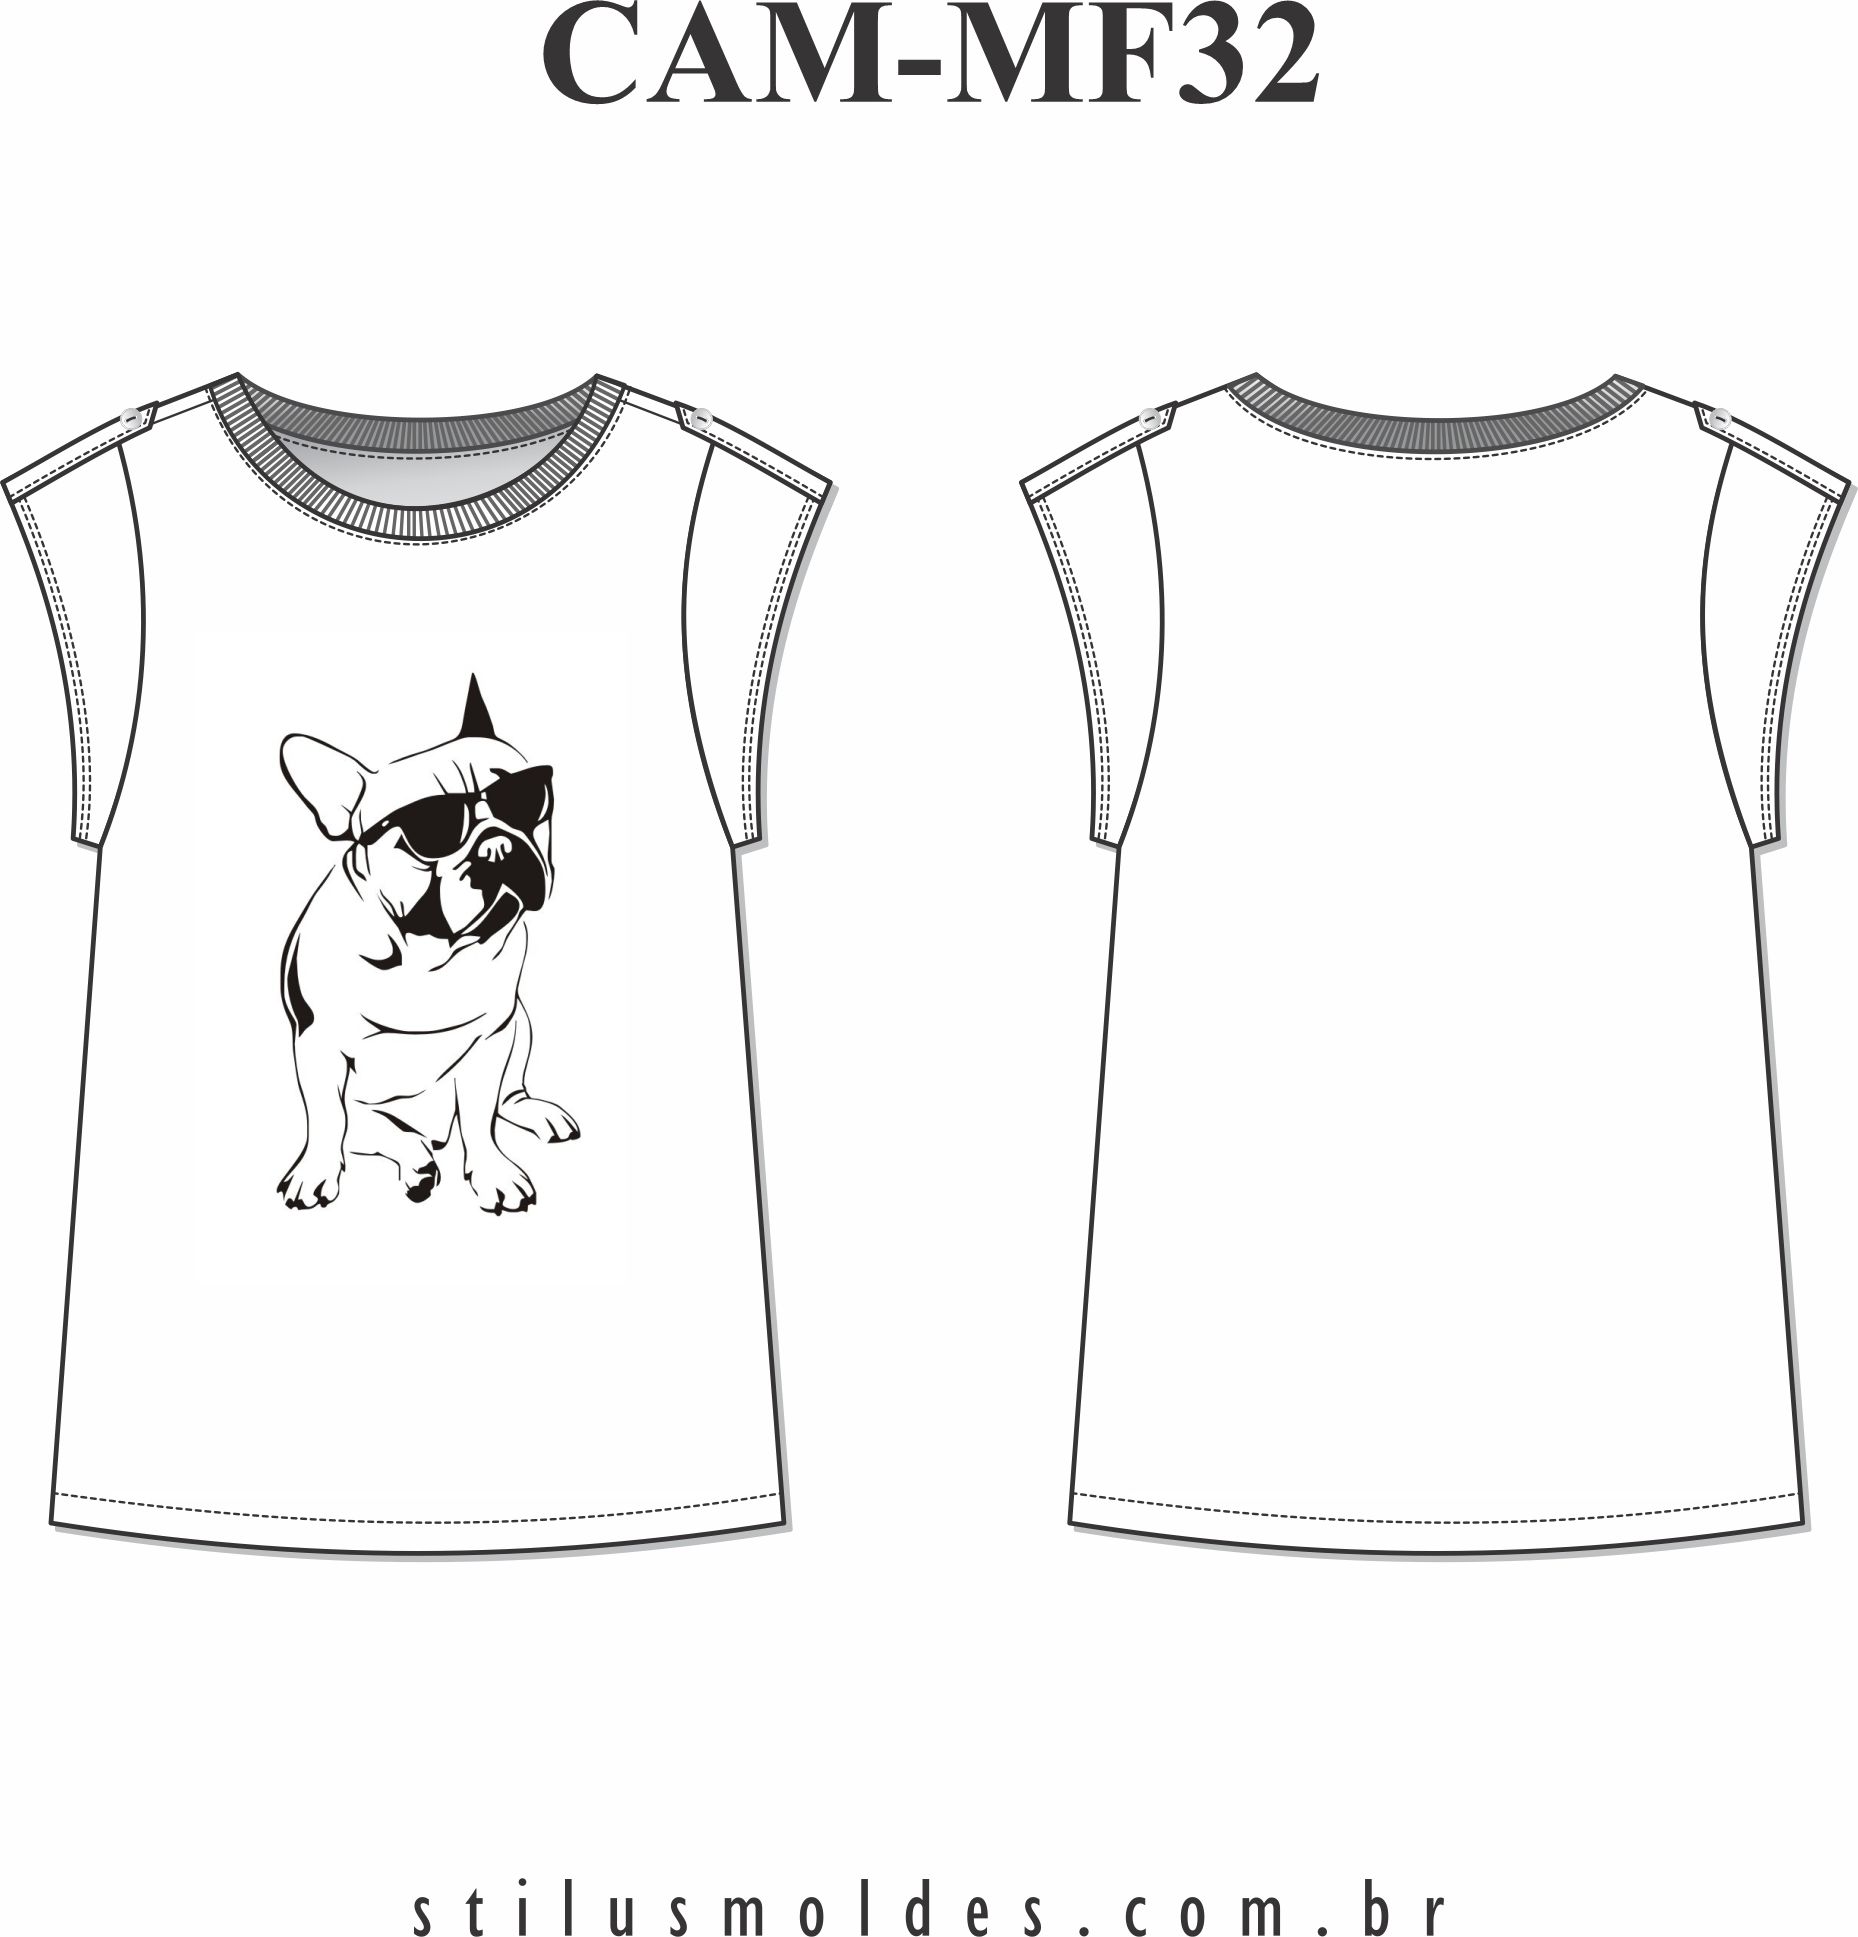 Camiseta Feminina (CAM-MF32) - Foto 0